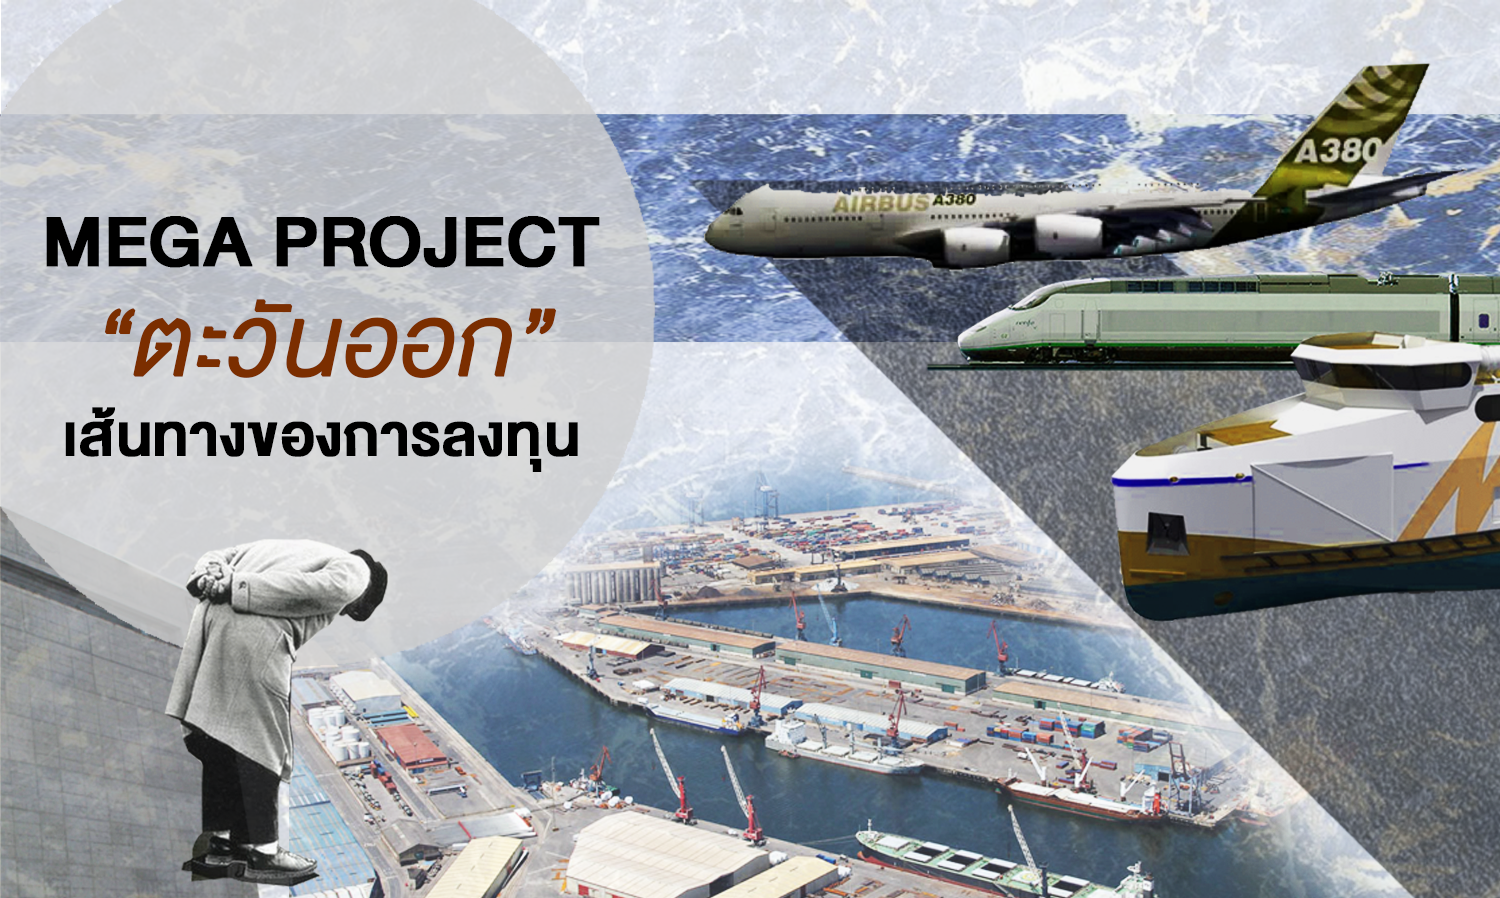 Mega Project “ ตะวันออก ” เส้นทางของการลงทุน